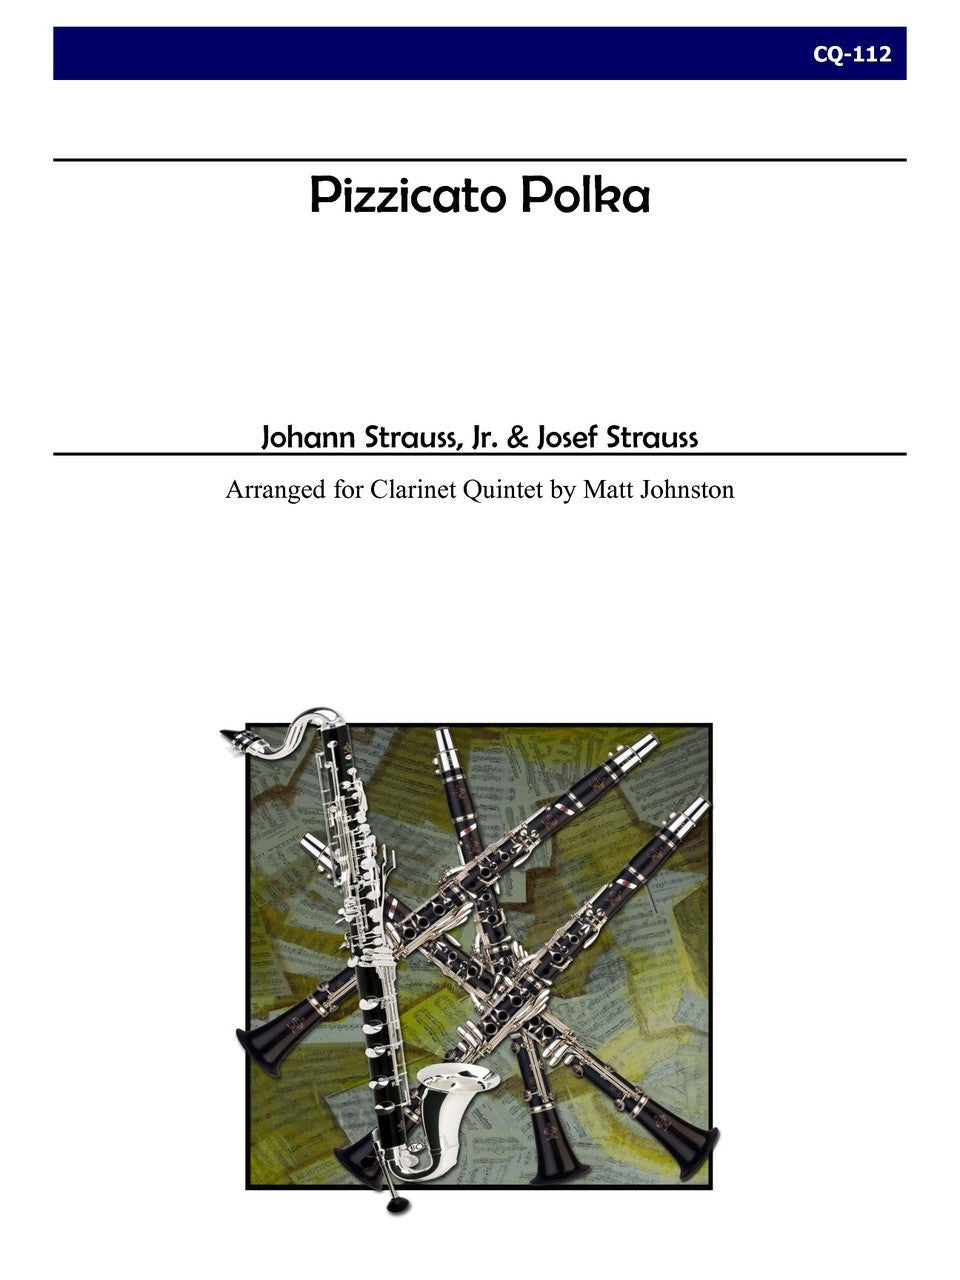 Strauss, Jr. (arr. Matt Johnston) - Pizzicato Polka for Clarinet Quintet